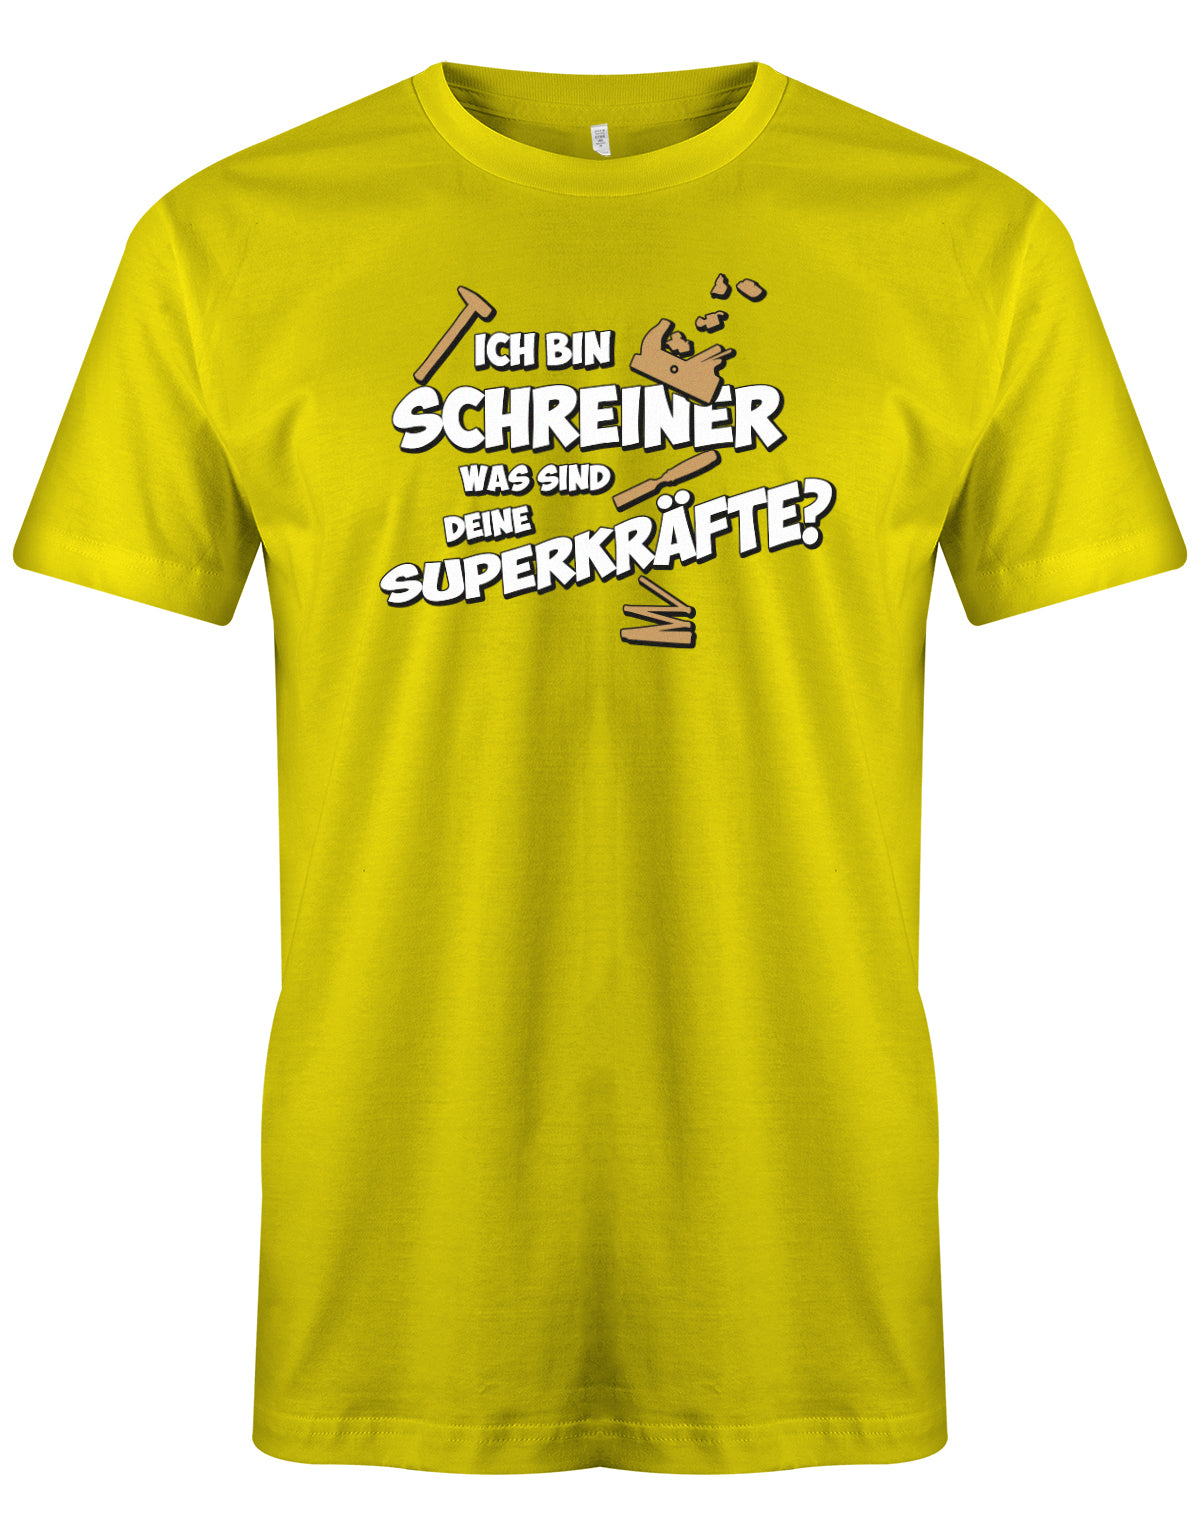 Schreiner und Tischler Shirt. Männer Shirt bedruckt mit: Ich bin Schreiner was sind deine Superkräfte? Gelb